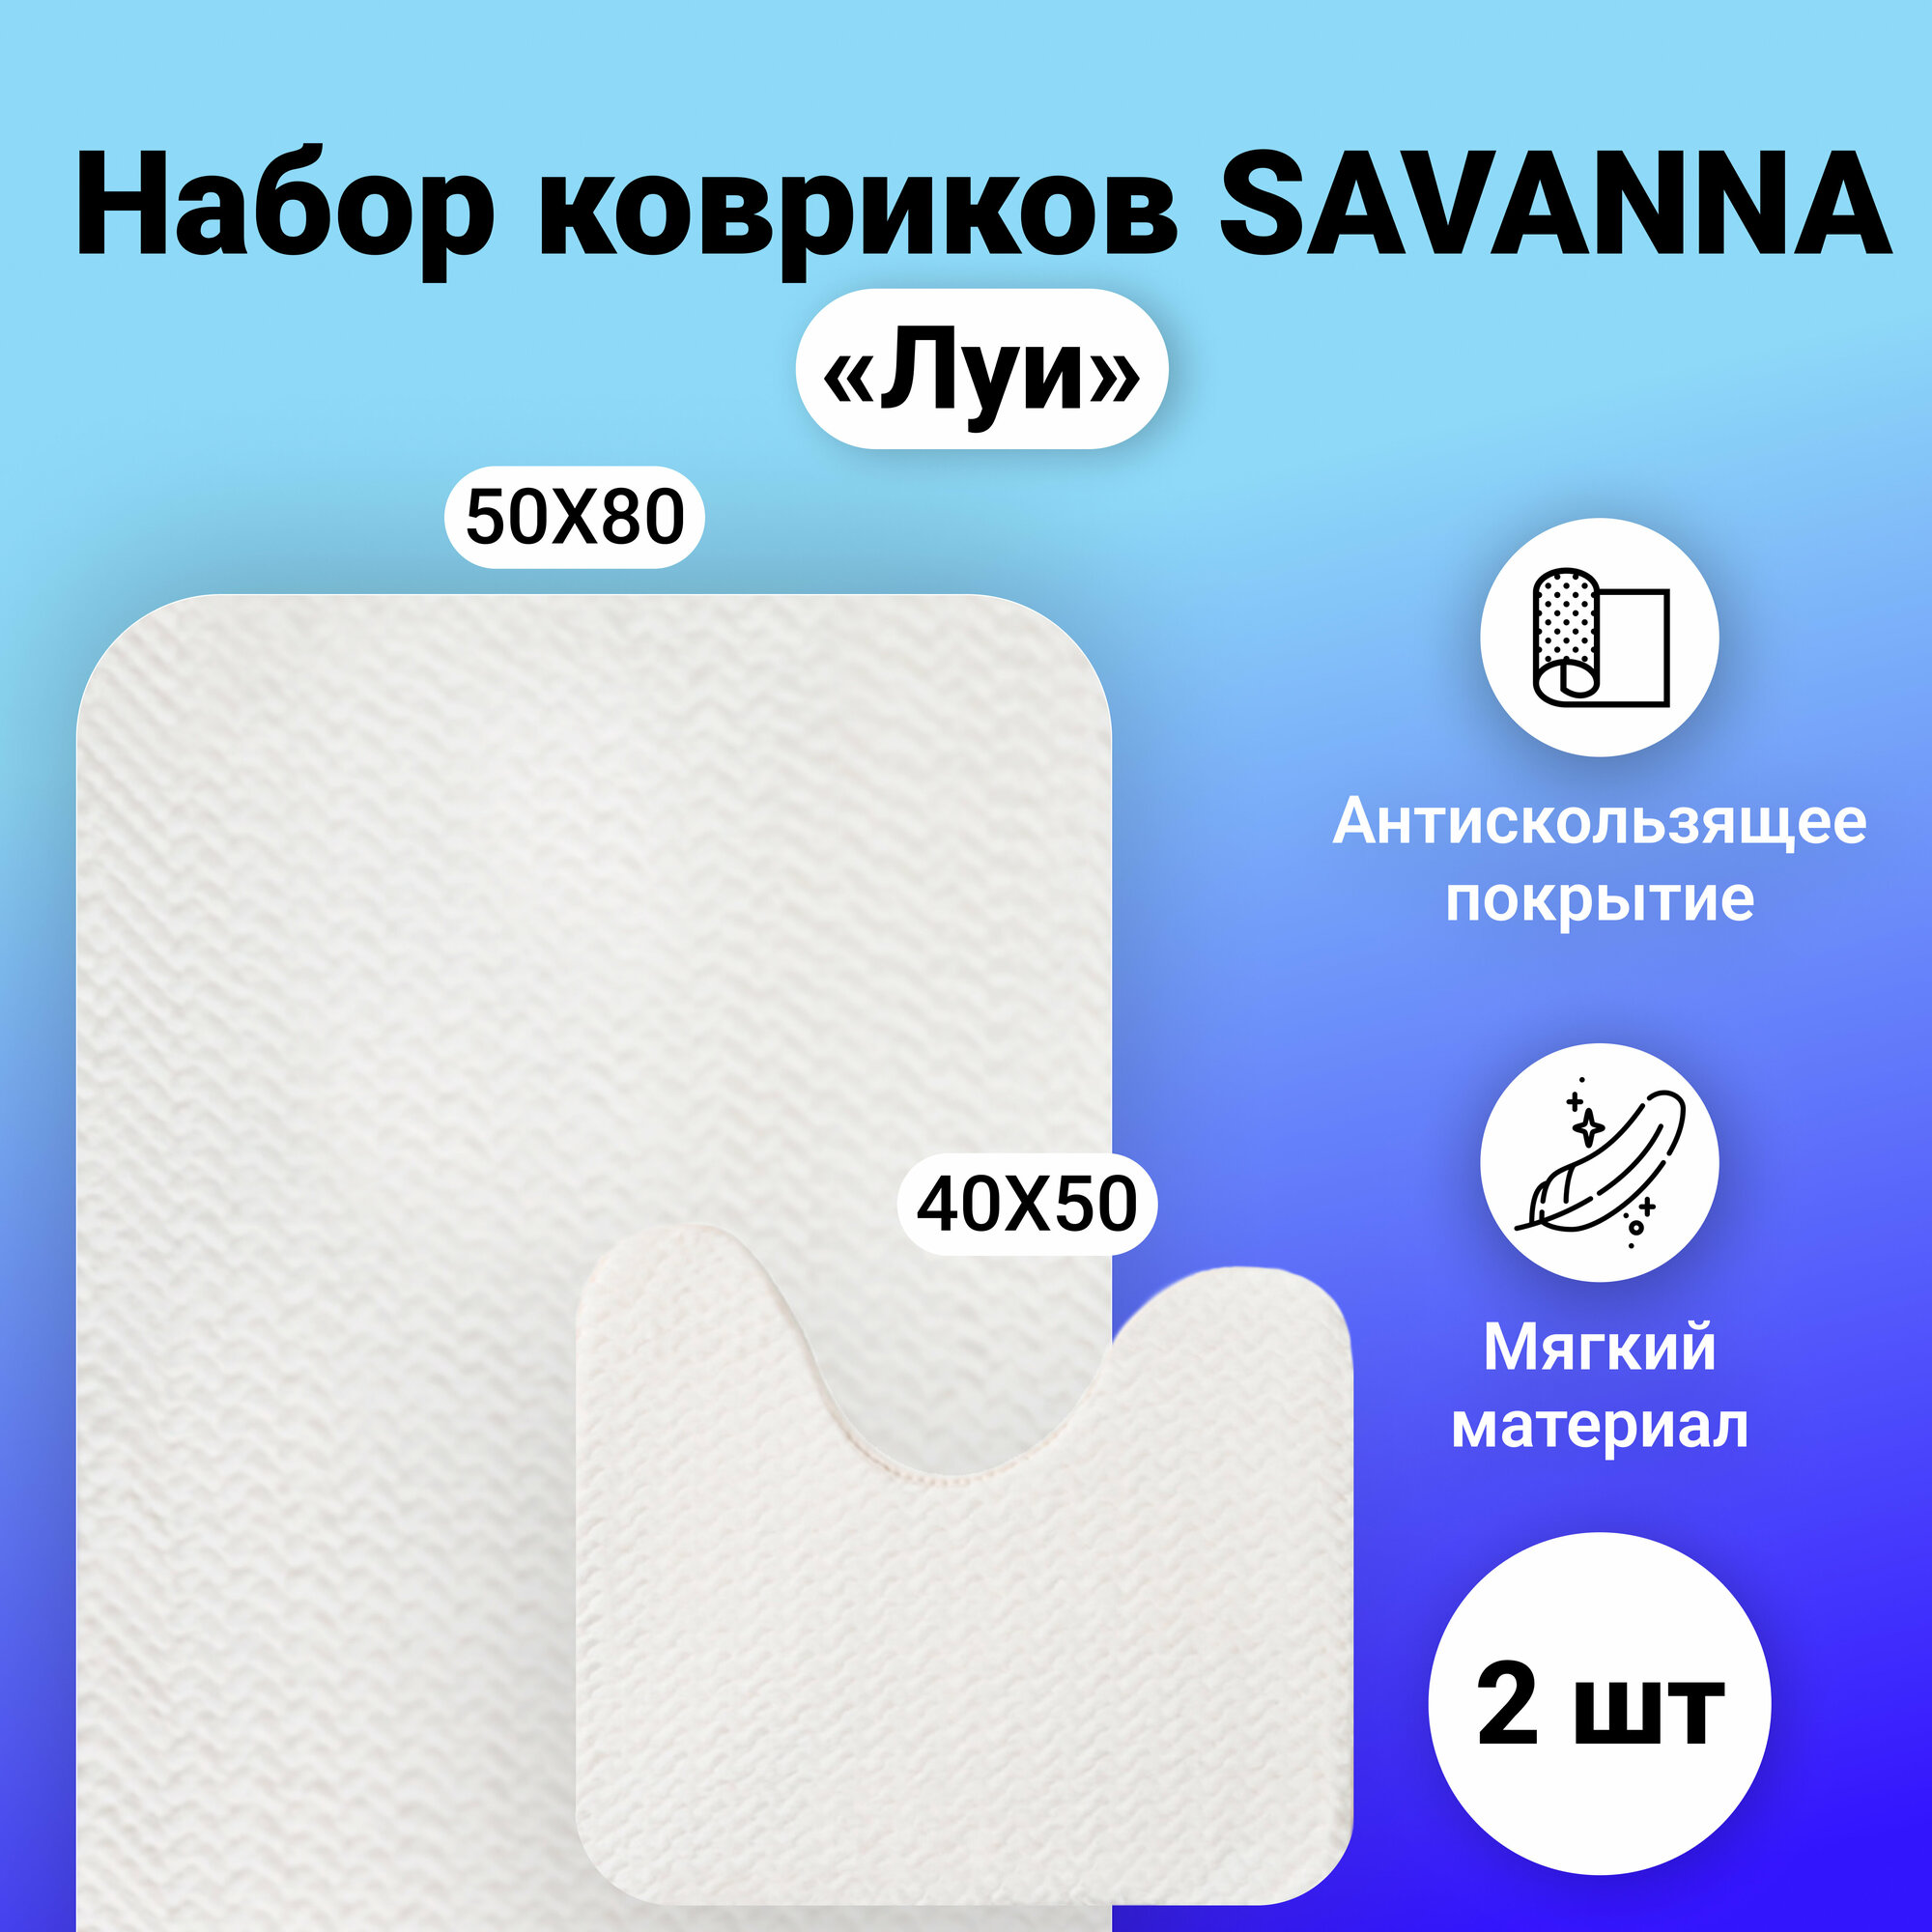 Коврик для ванной SAVANNA "Луи", набор 2 шт, для туалета, 50x80 и 40x50, цвет светло-бежевый